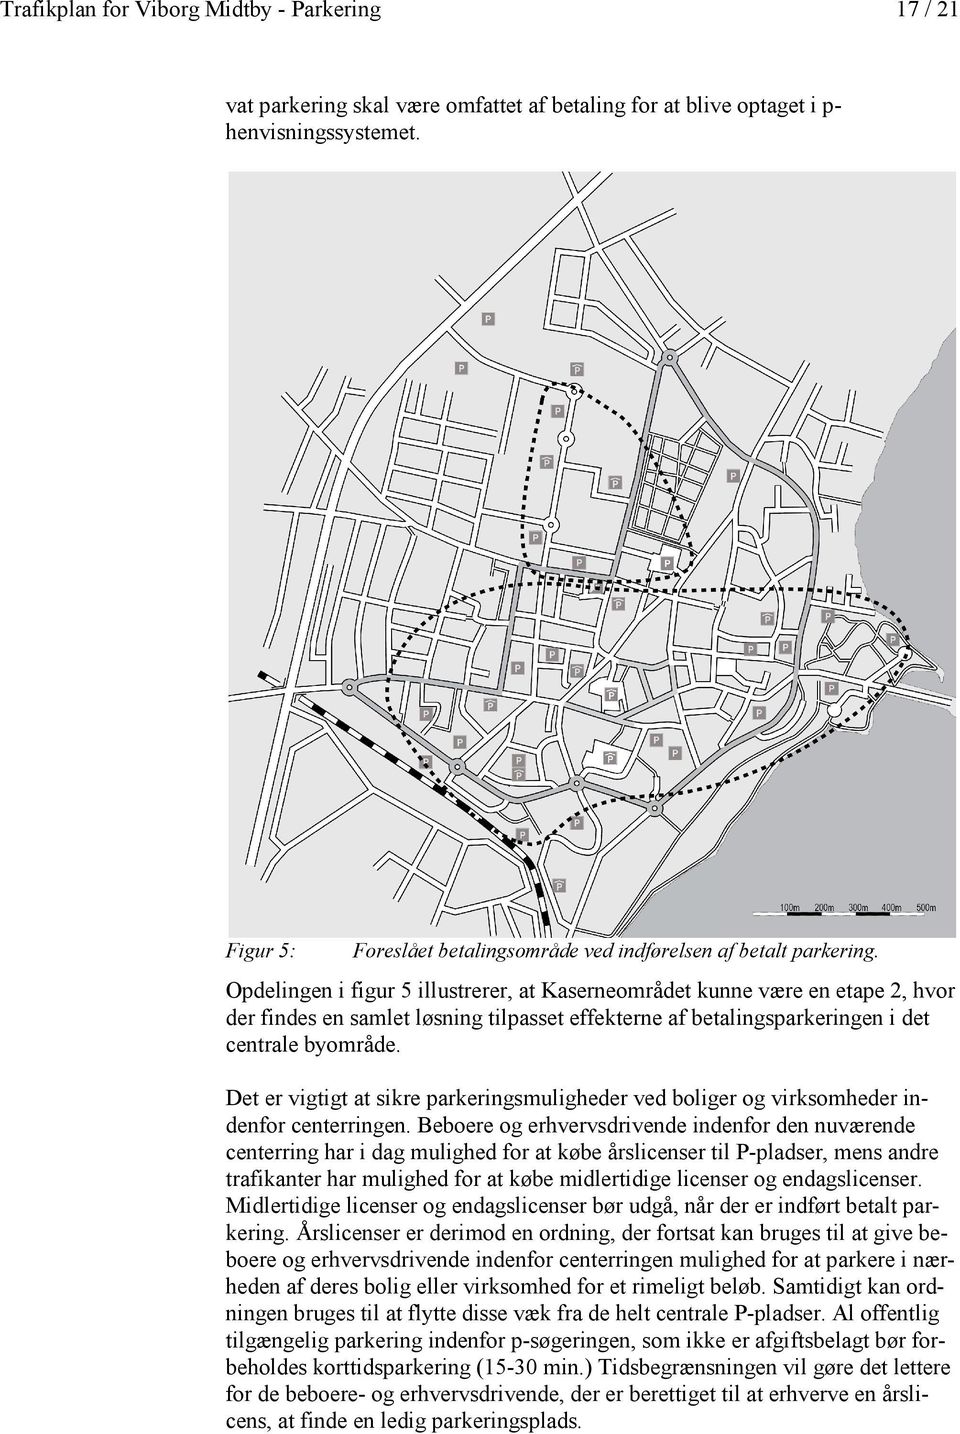 Opdelingen i figur 5 illustrerer, at Kaserneområdet kunne være en etape 2, hvor derr findes en samlet løsning tilpasset effekterne af betalingsparkeringen i det centrale byområde.